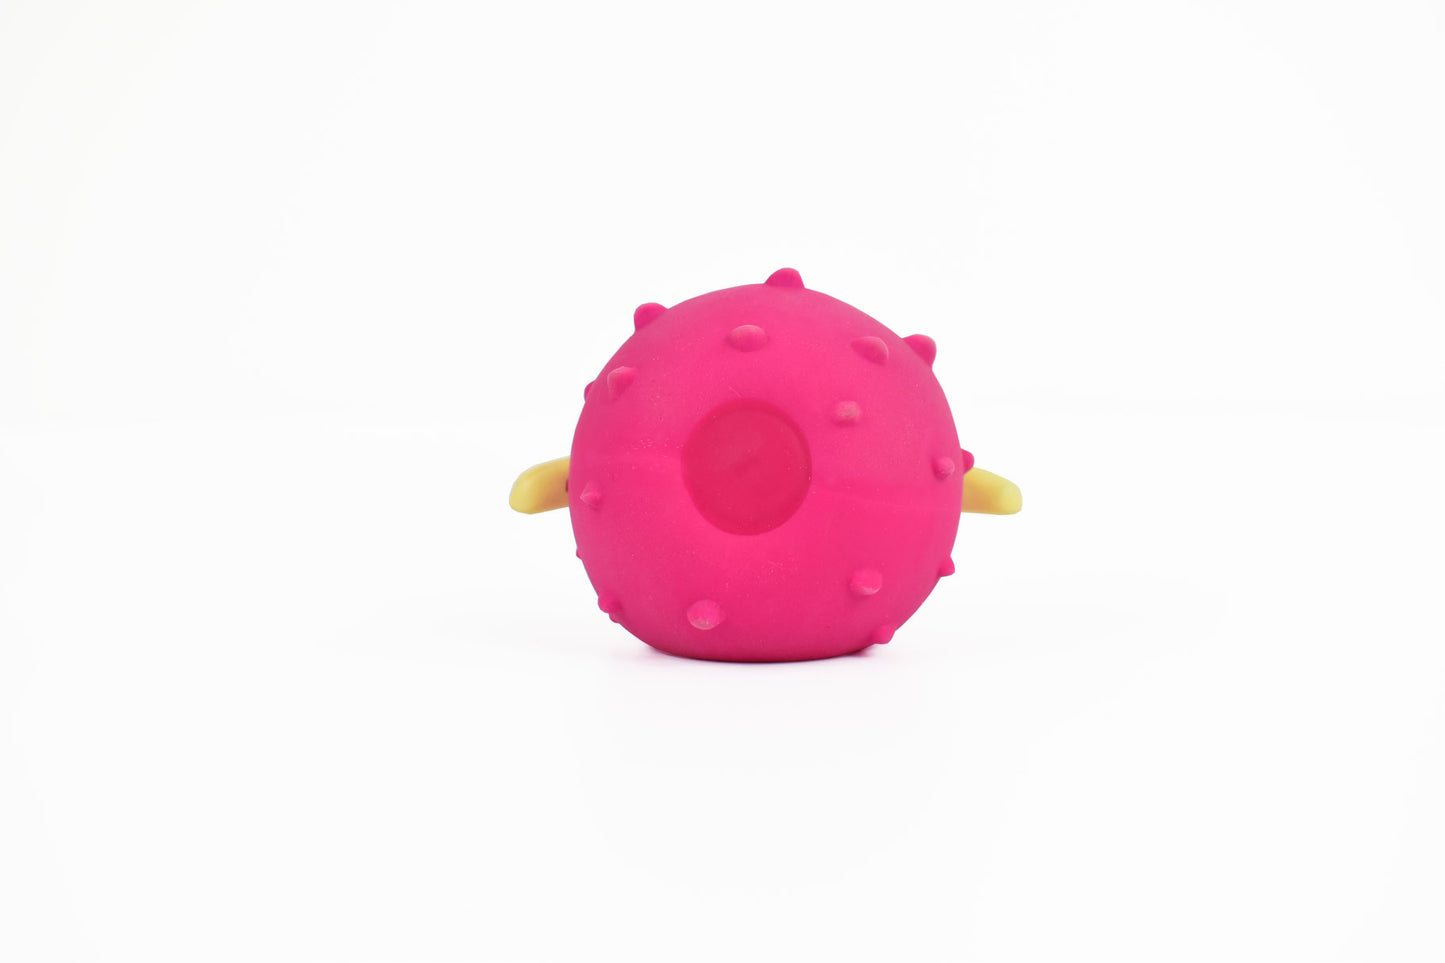 Kugelfisch-Ball in pink von hinten